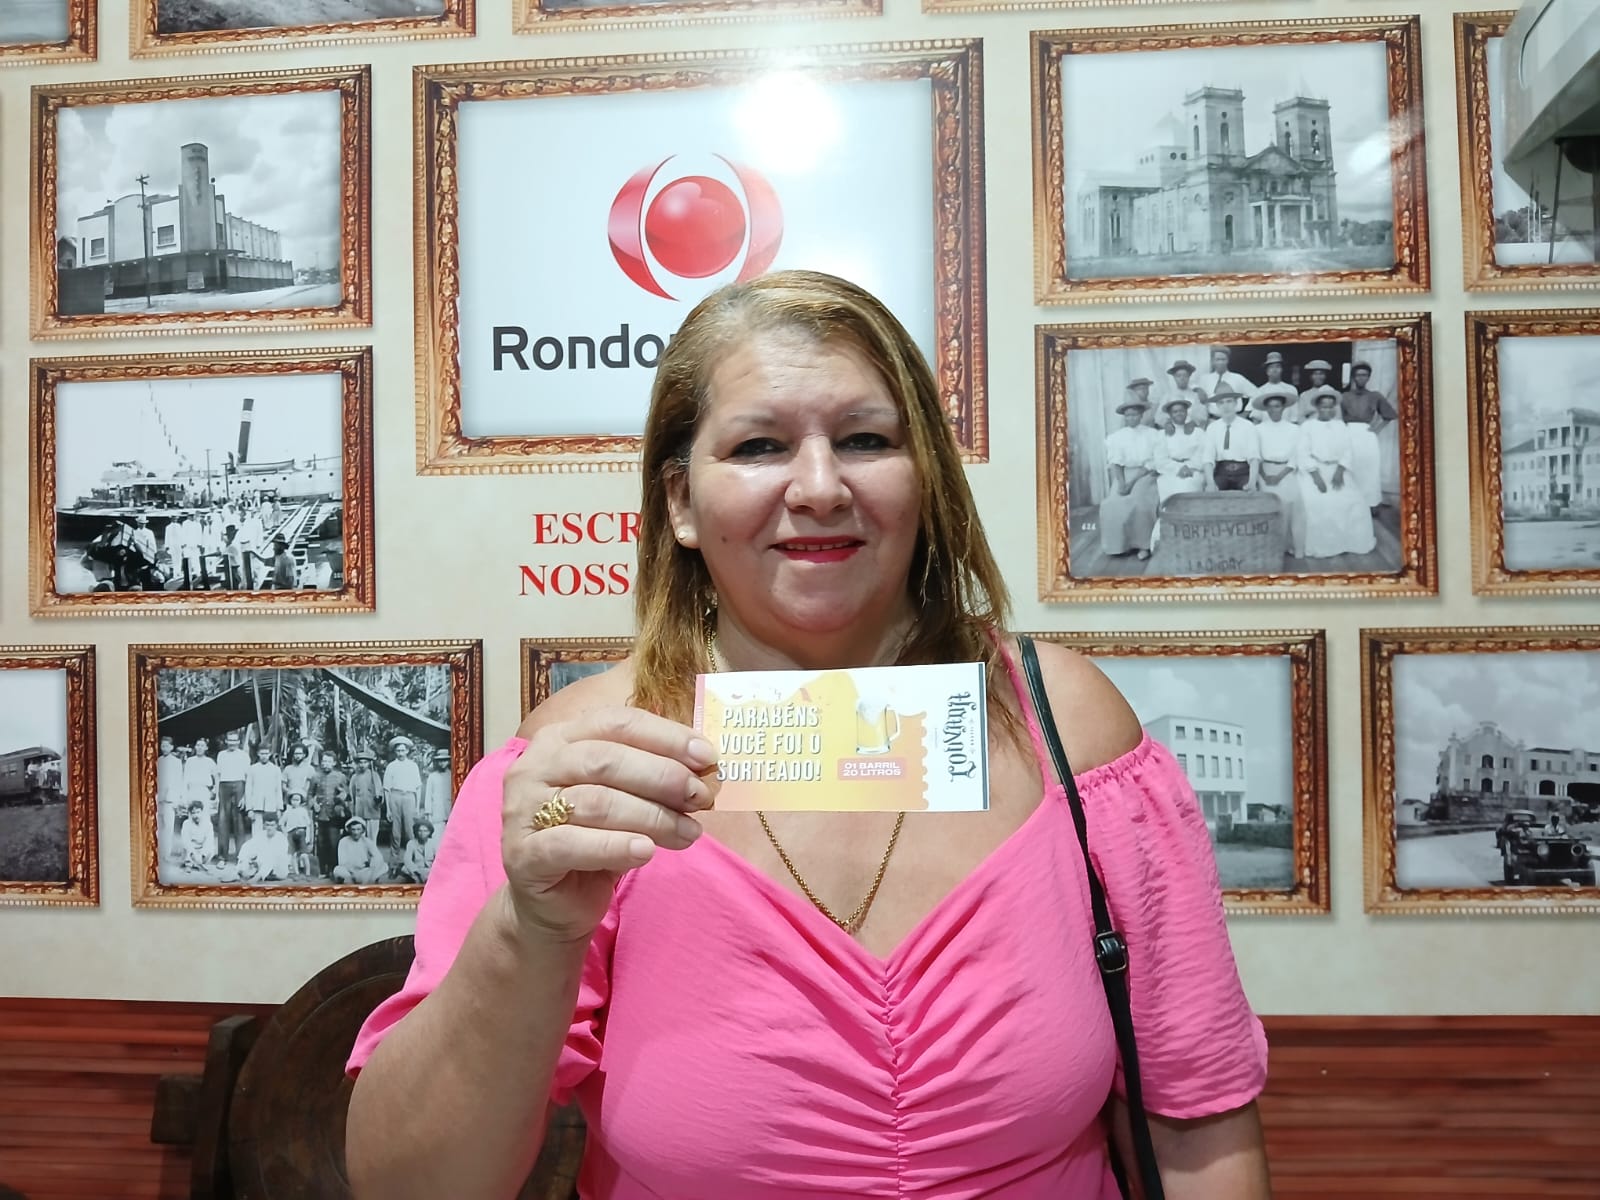 PREMIADOS: Confira os ganhadores da última promoção do Rondoniaovivo